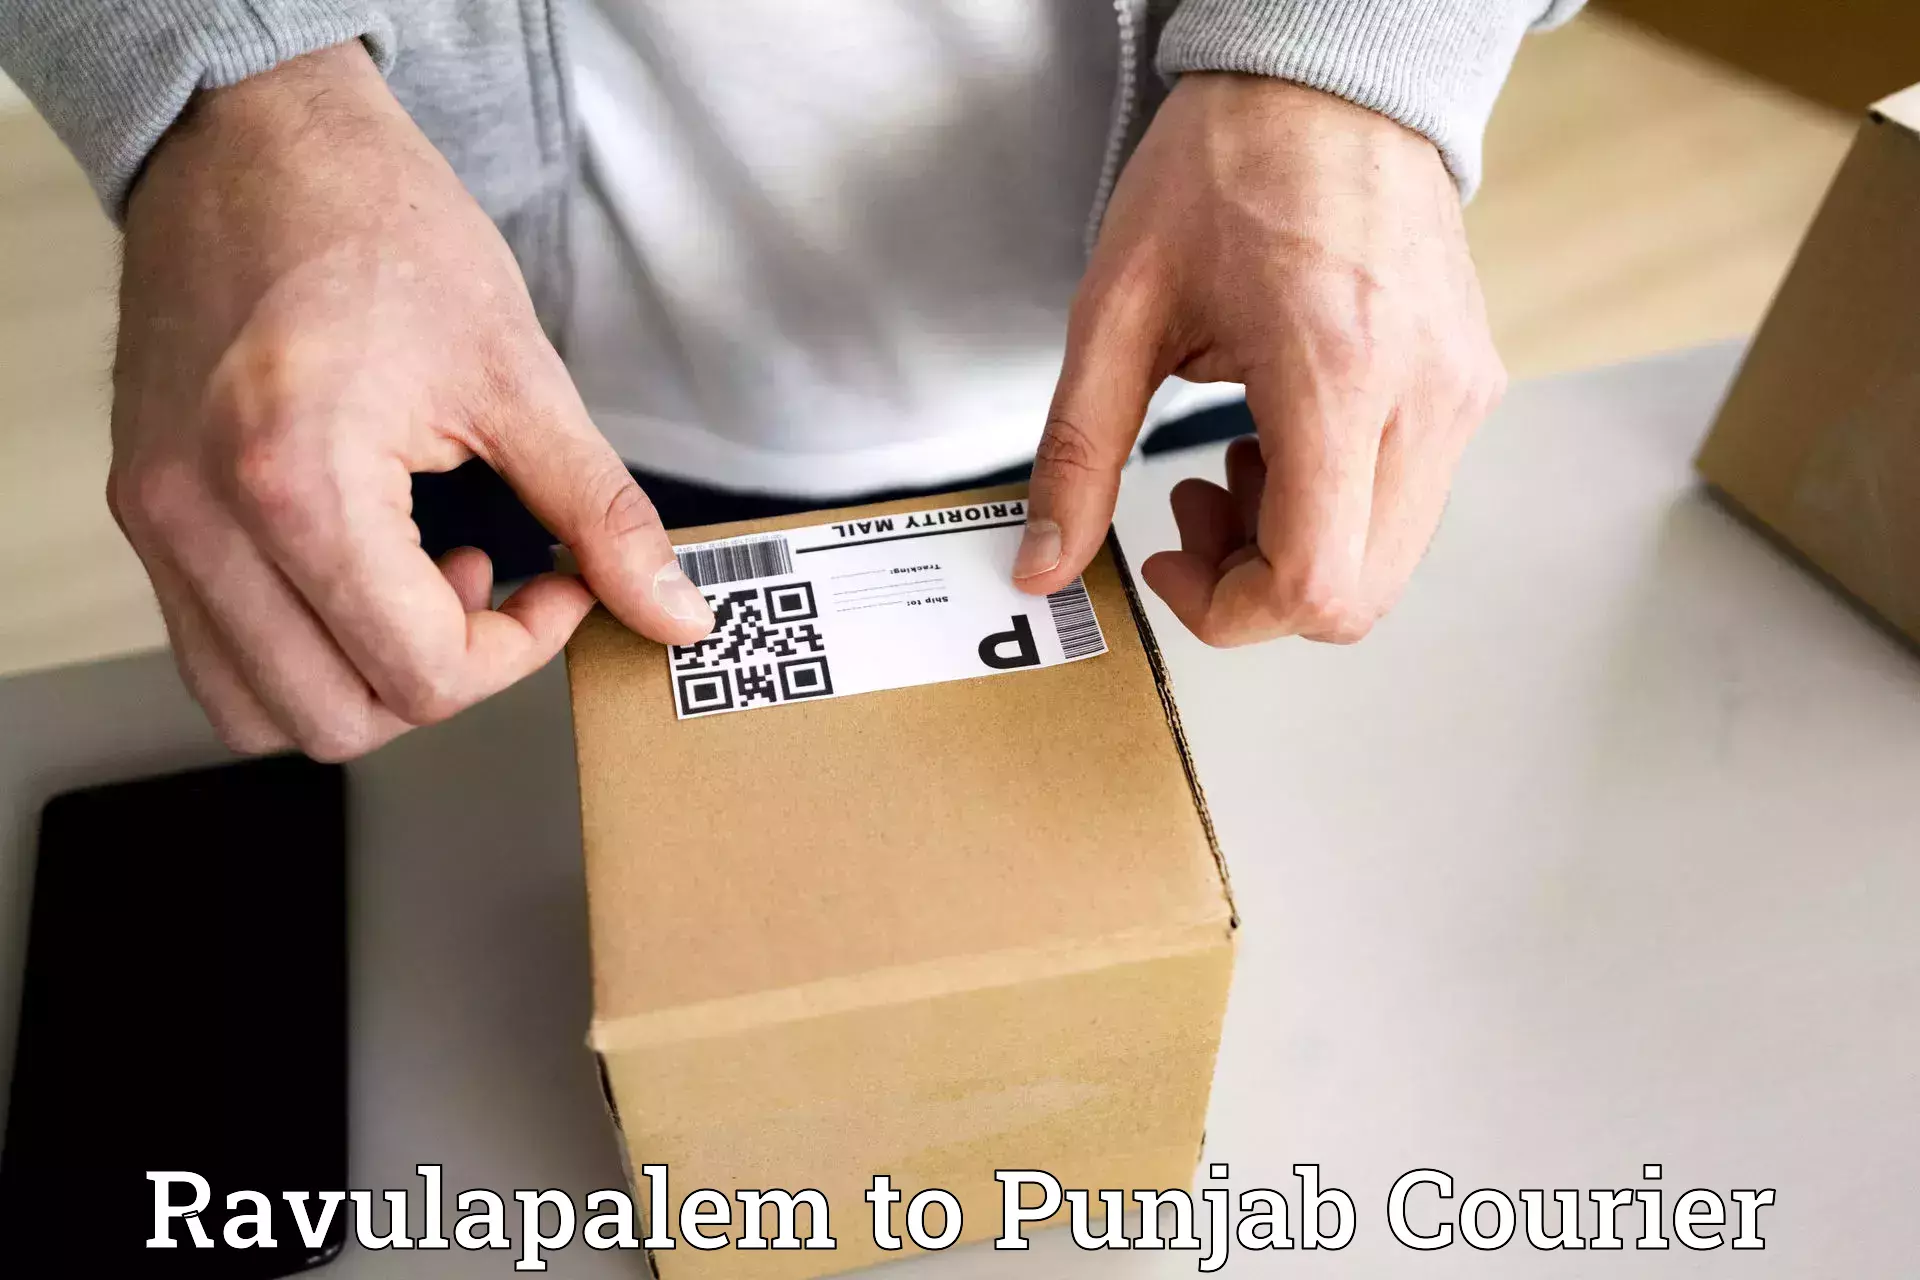 Express postal services Ravulapalem to Punjab